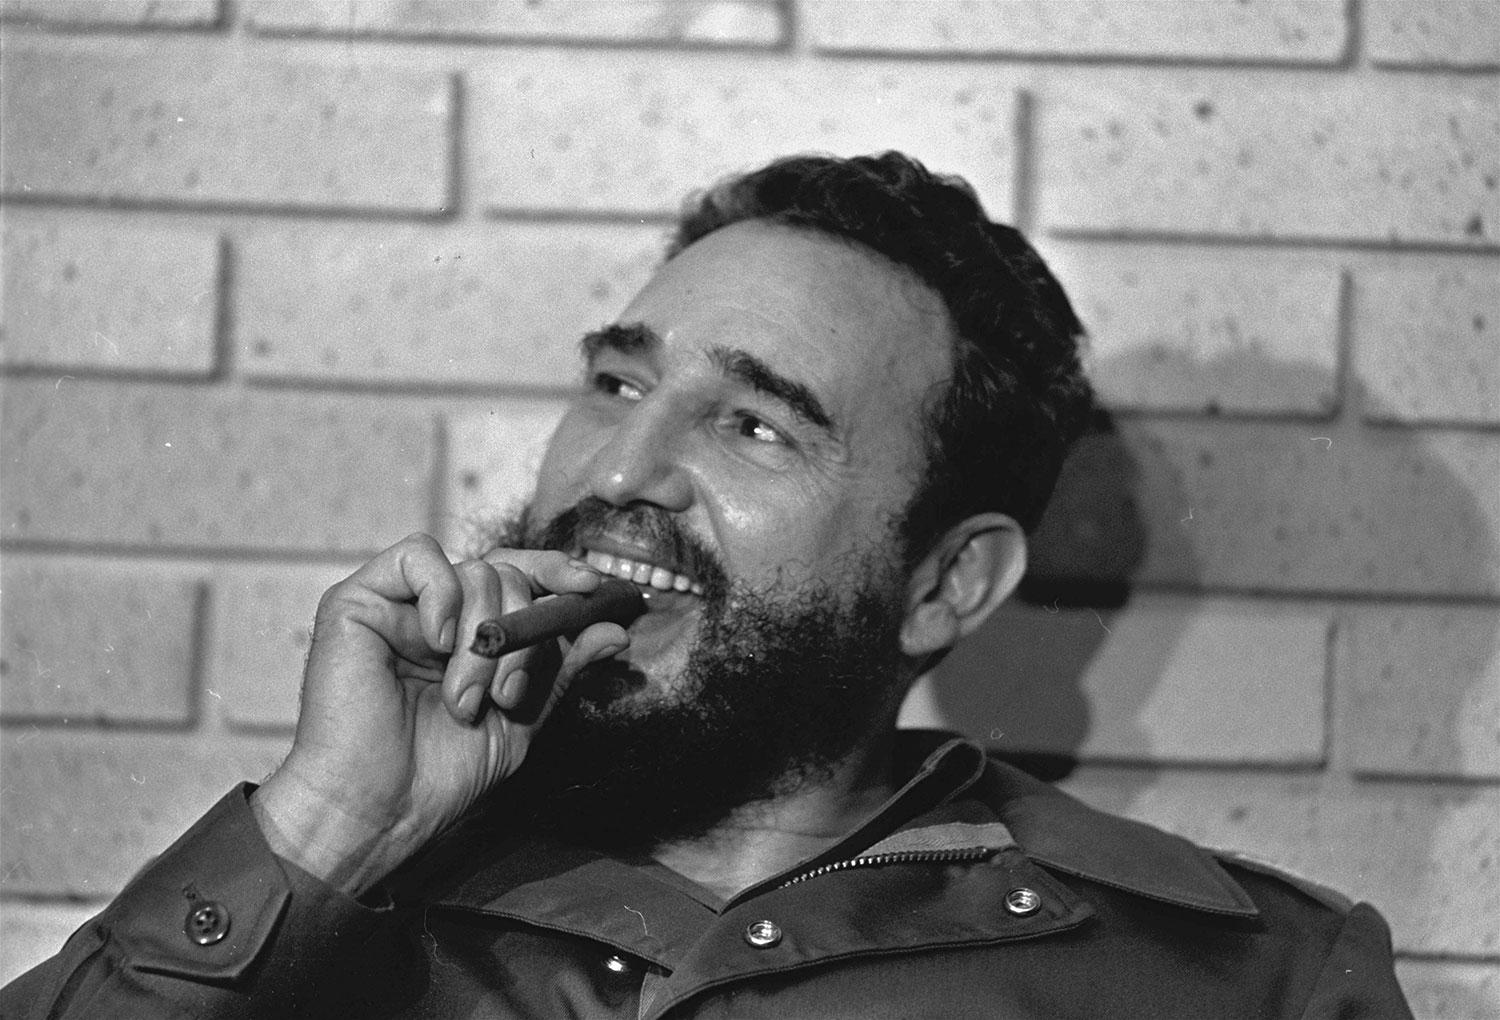 Castro älskade cigarrer – men slutade röka på 1980-talet. ”Jag slutade för att min läkare sa till mig”, berättade han för Aftonbladet.